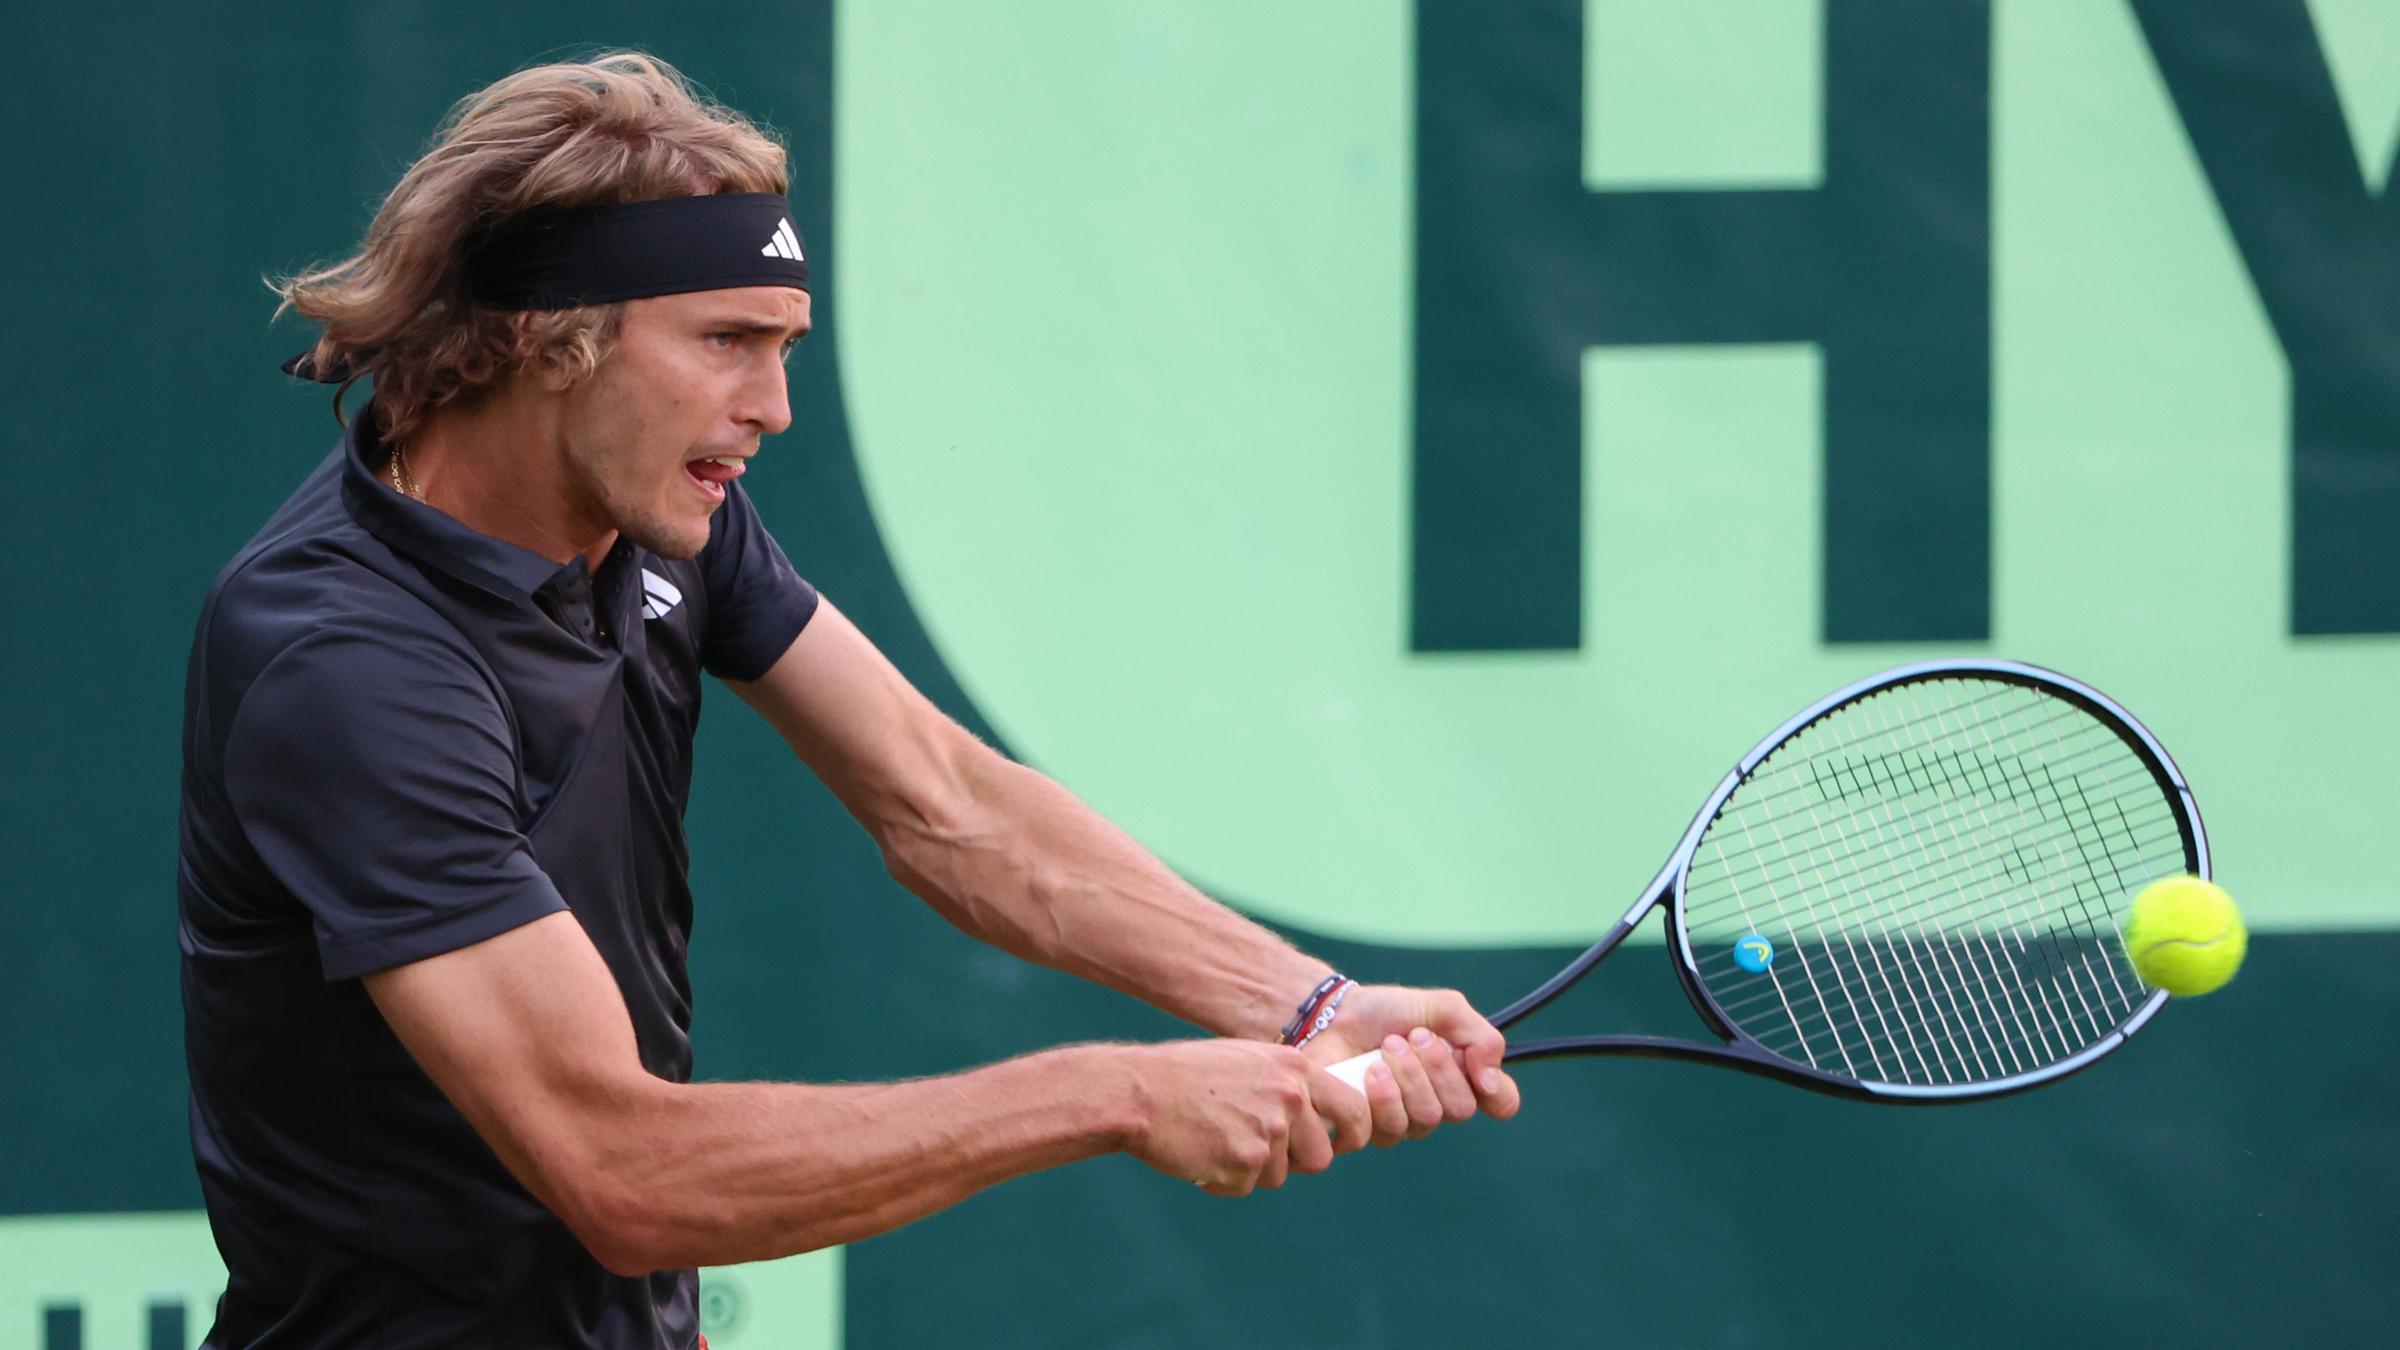 Tennis in Halle Zverev und Struff weiter, Jubel für Federer